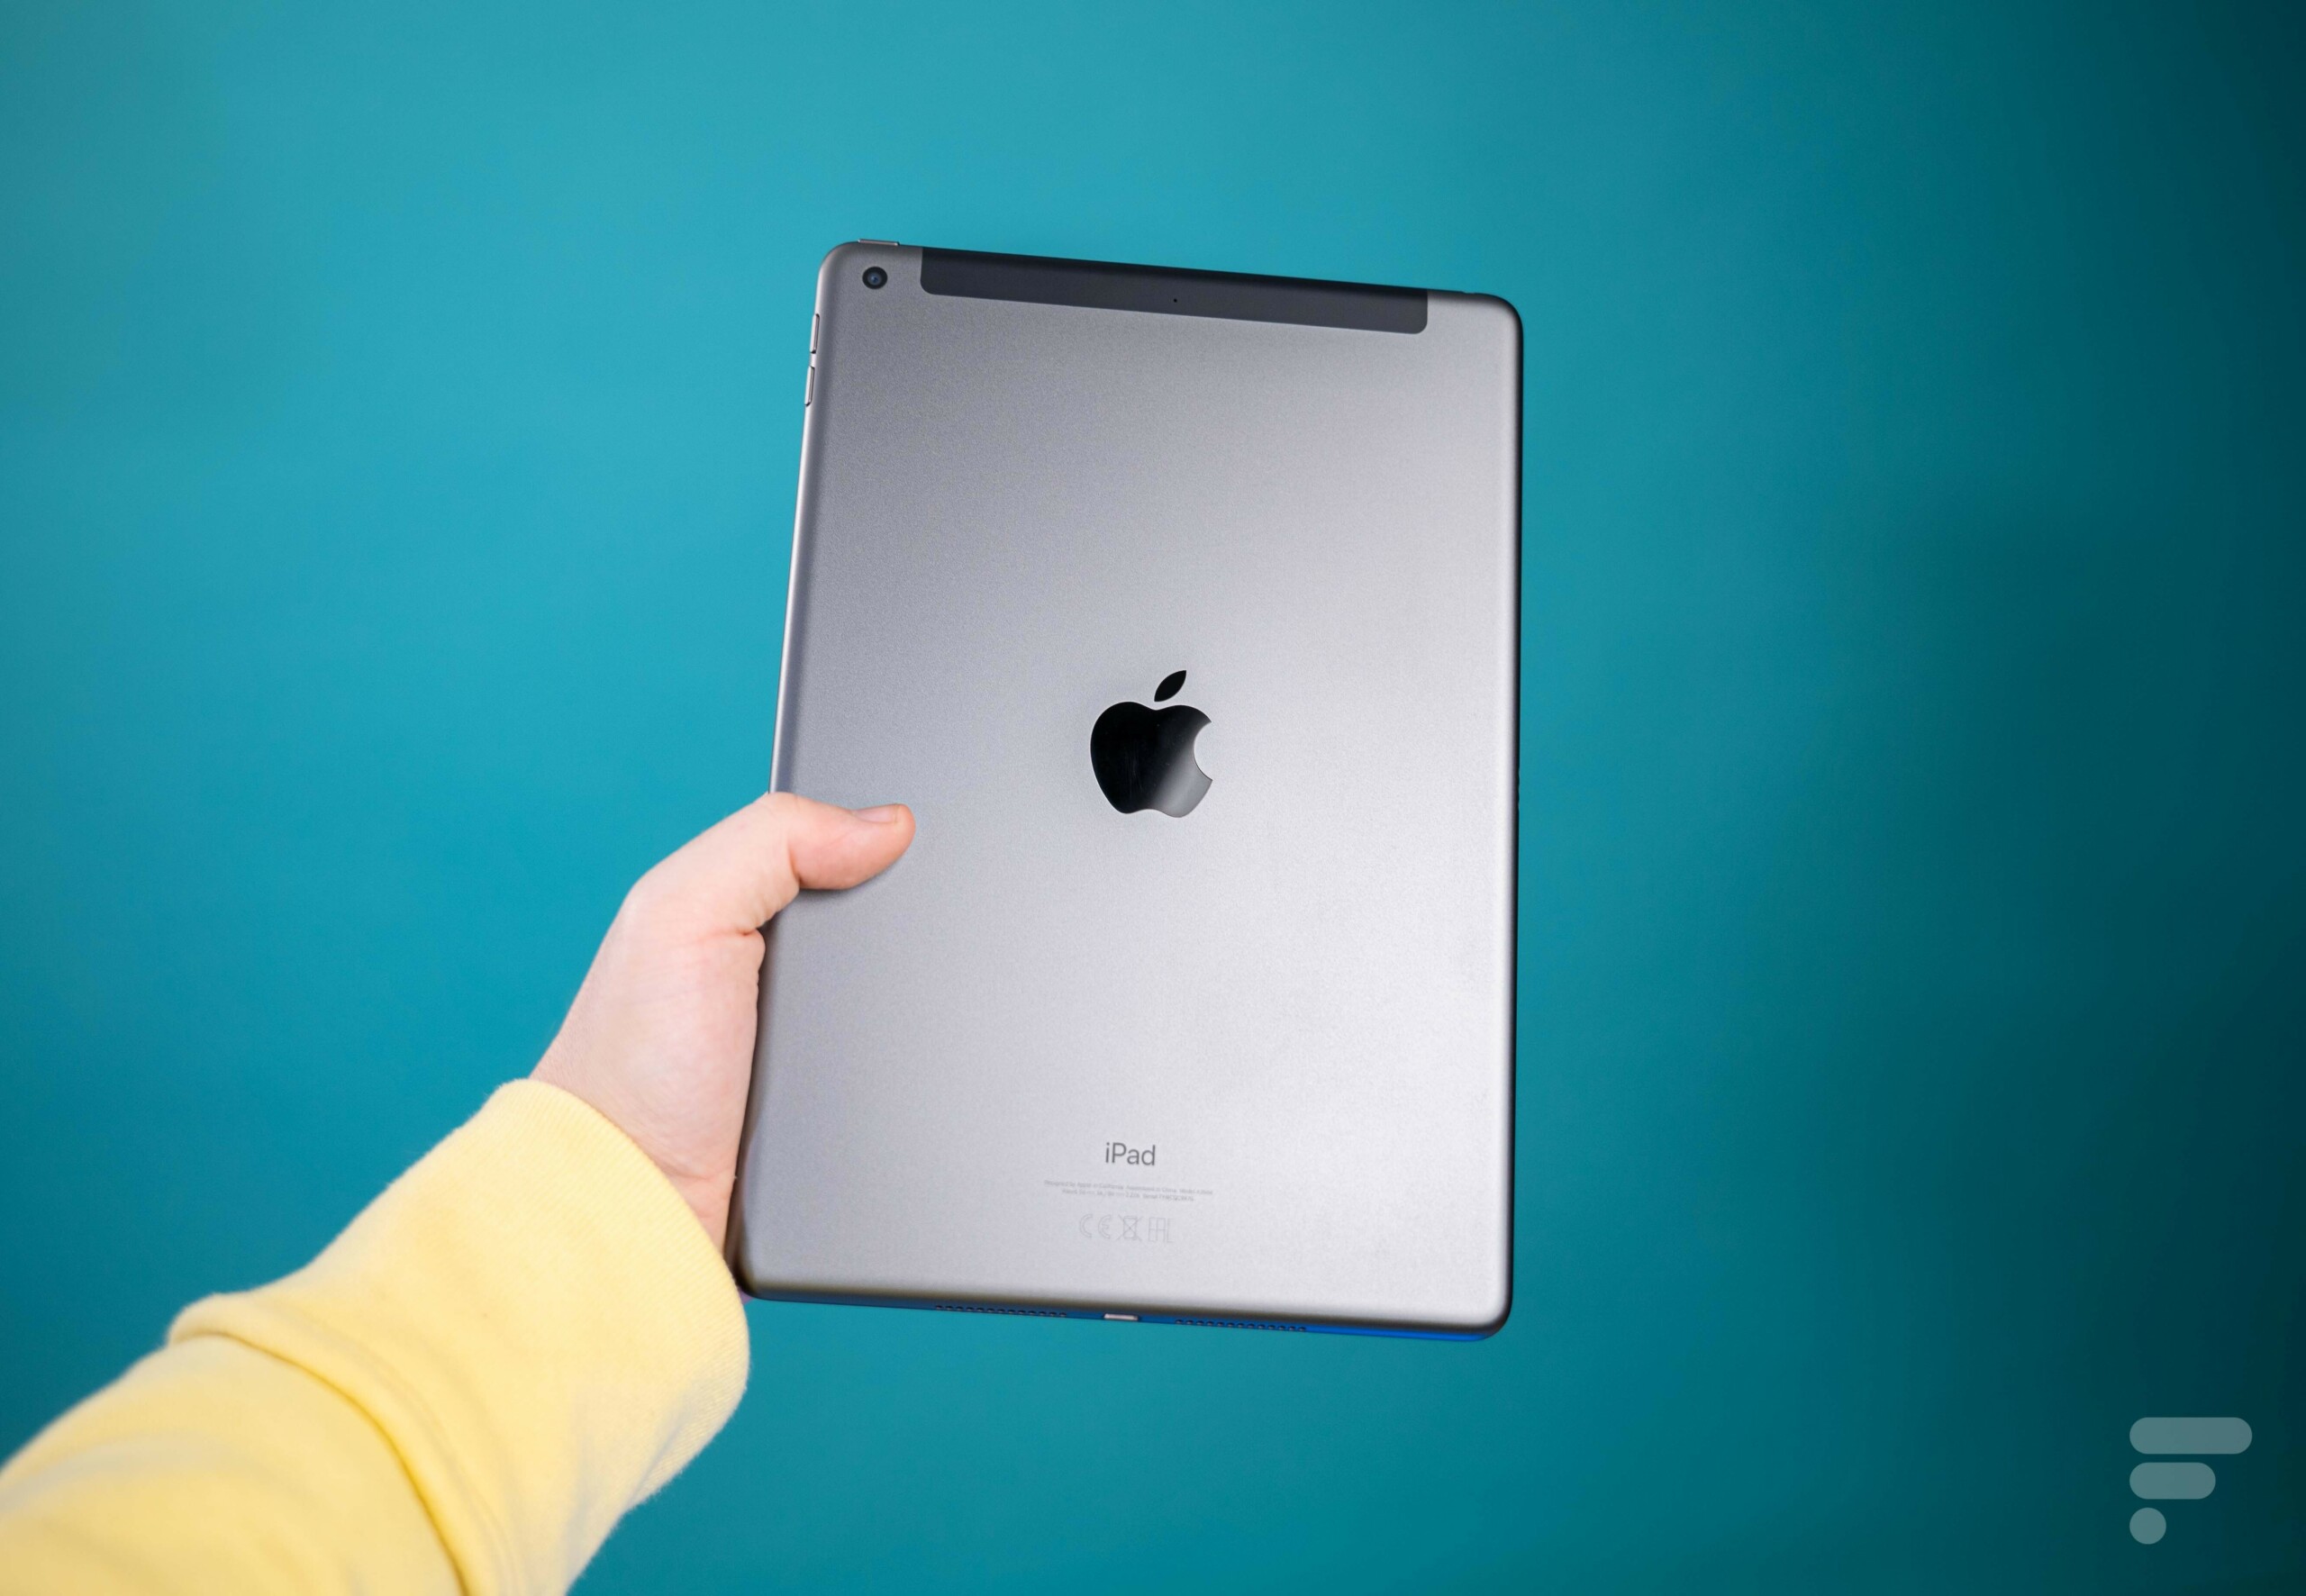 Apple iPad 2021 (9eme génération) 64 Go - WiFi - Gris sidéral